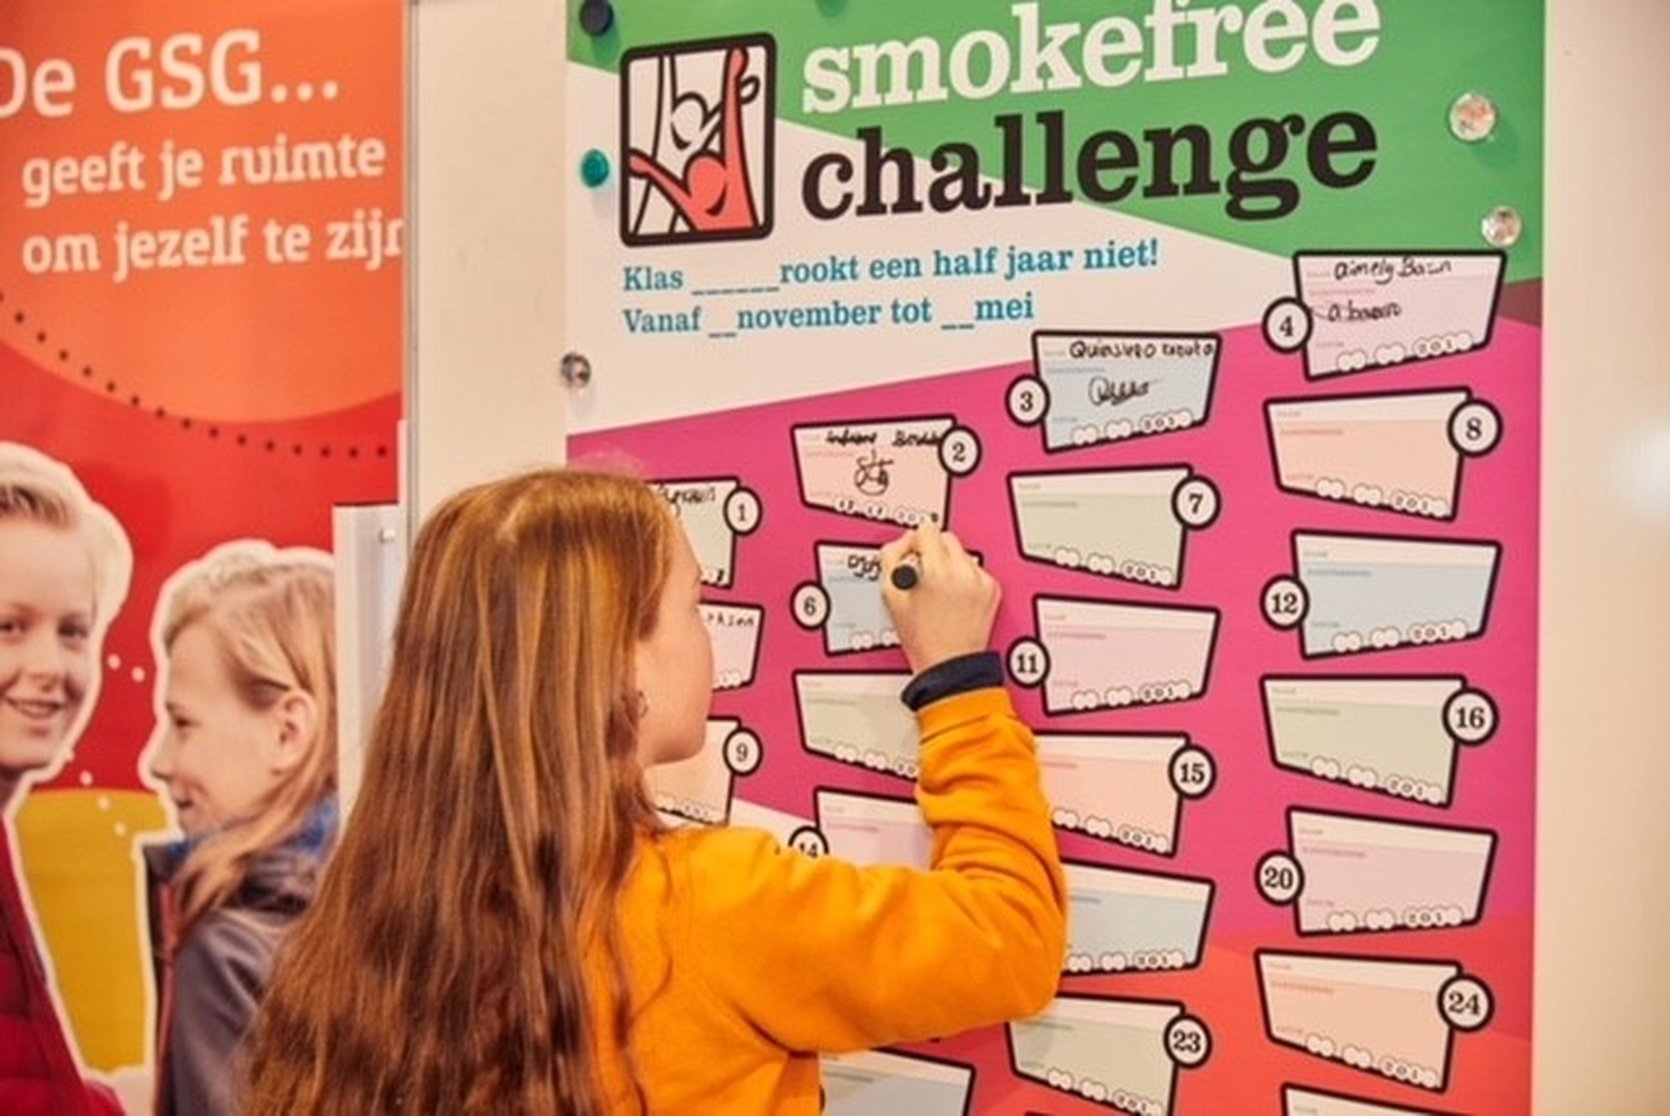 Vmbo’er heeft drie keer zoveel kans om te roken als vwo-leerling